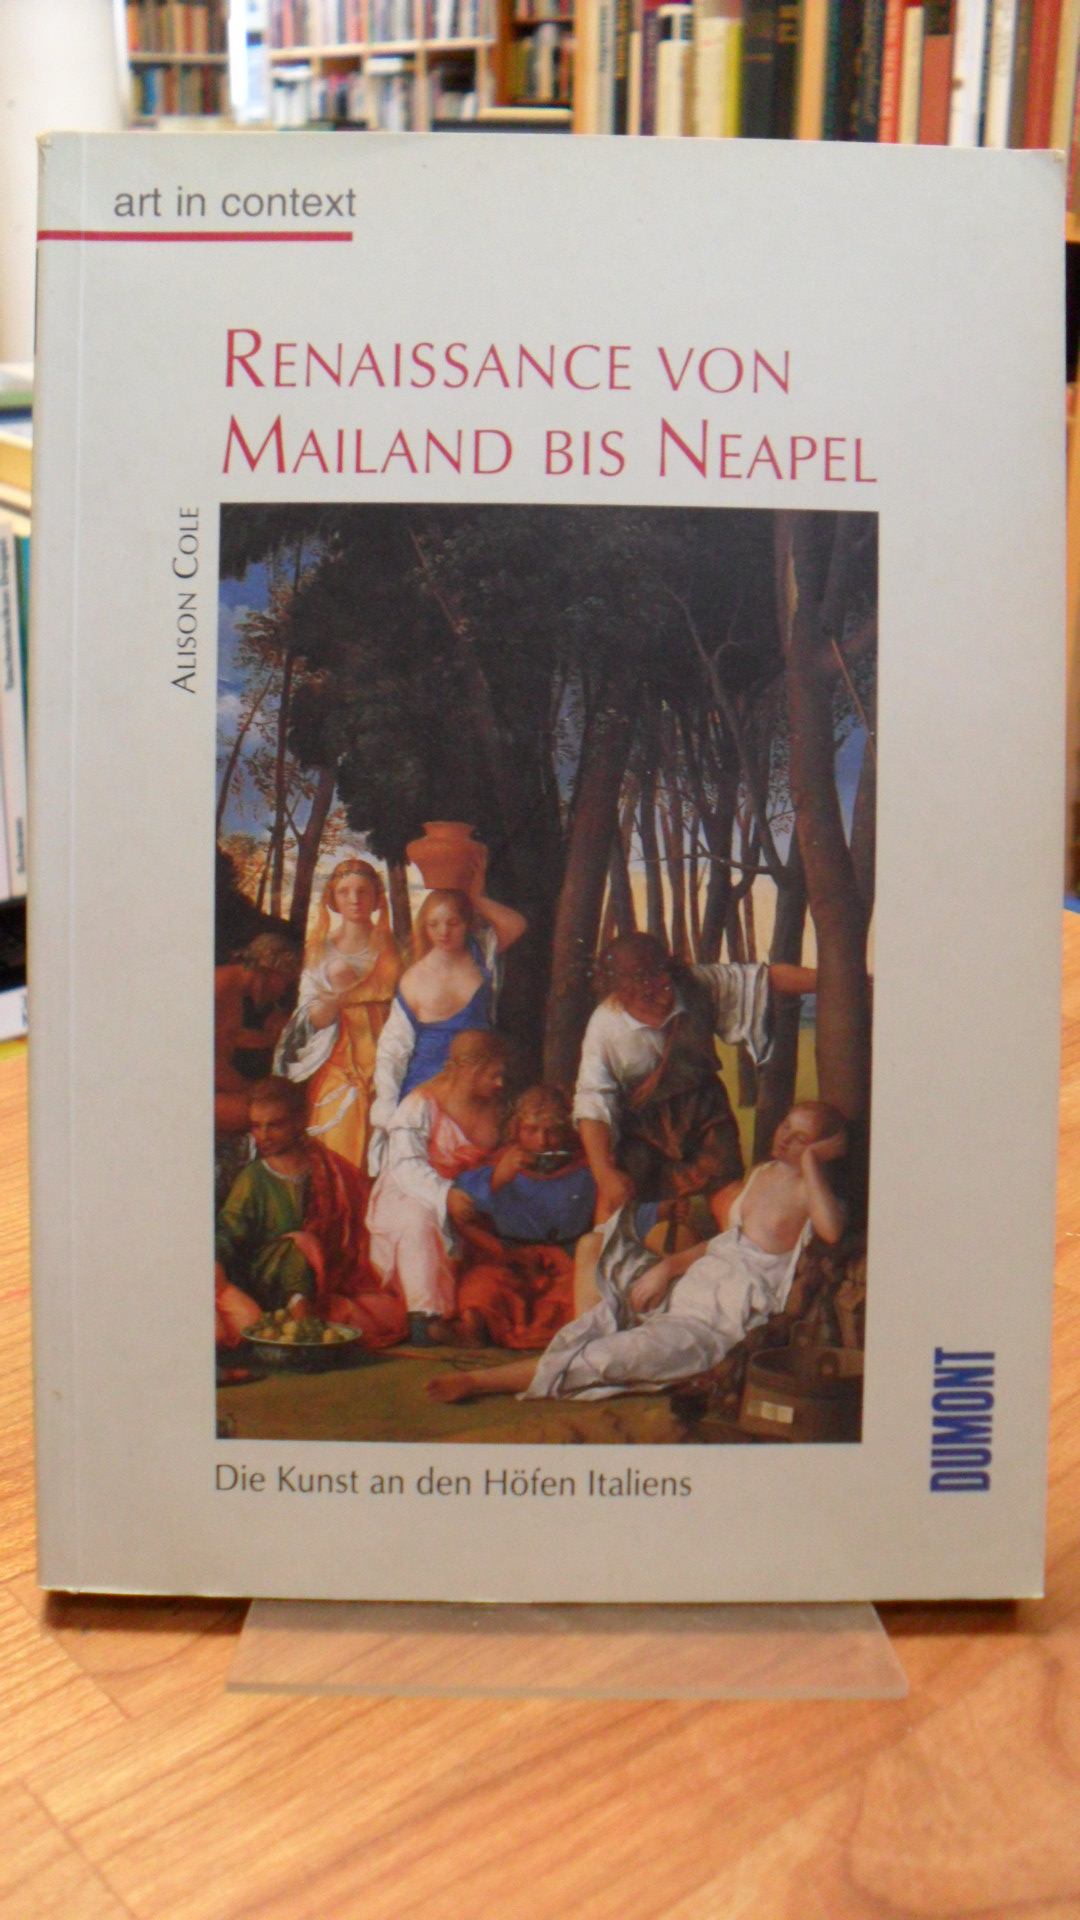 Renaissance von Mailand bis Neapel – Die Kunst an den Höfen Italiens,